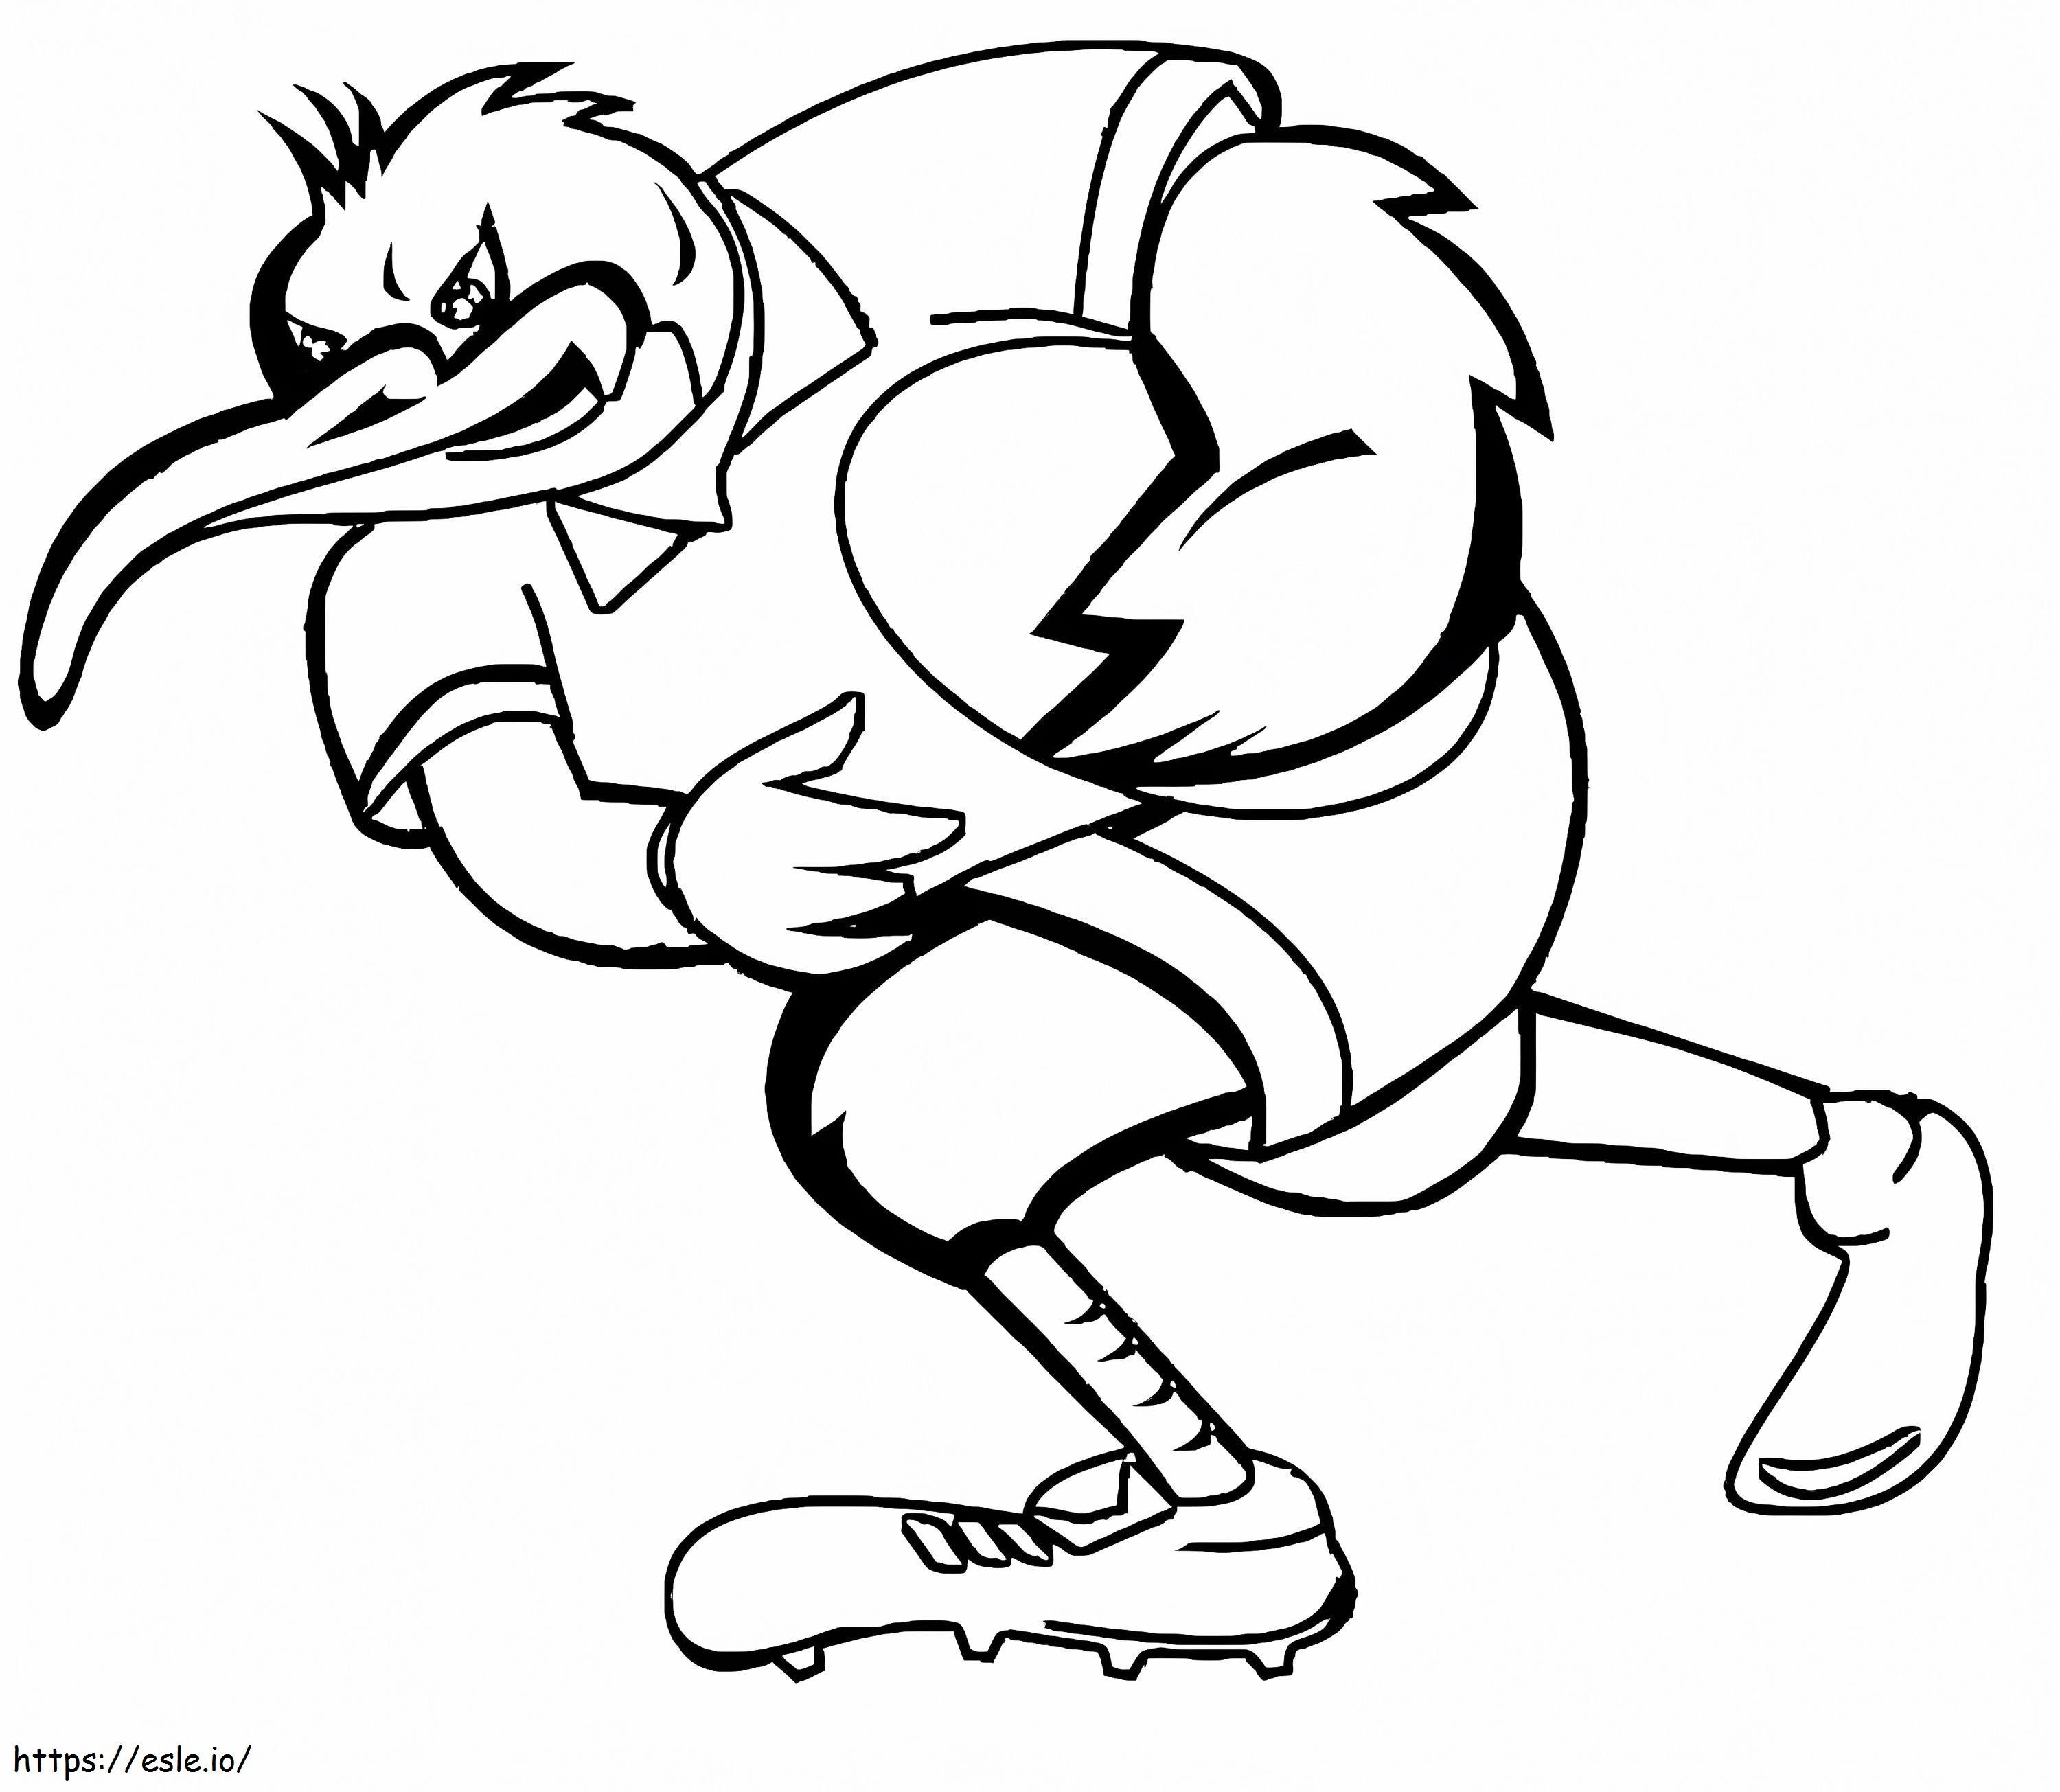 Kiwi-Vogel spielt Rugby ausmalbilder